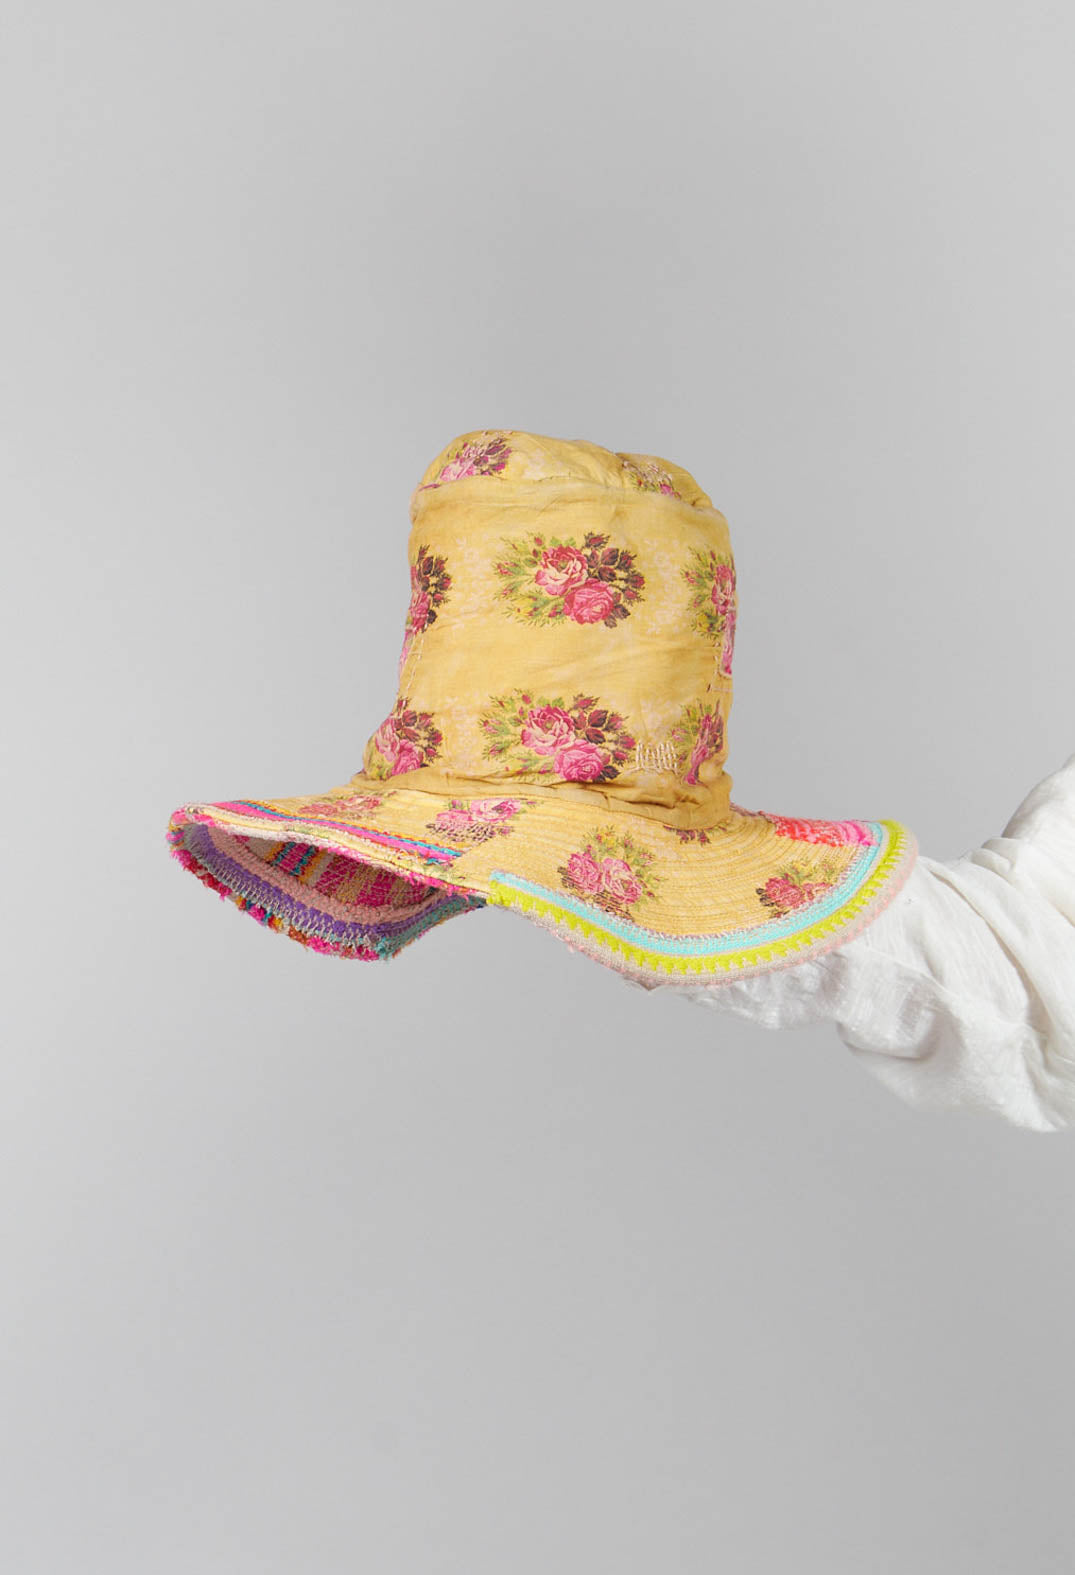 Jacquard Brunel Top Hat in Culture Club